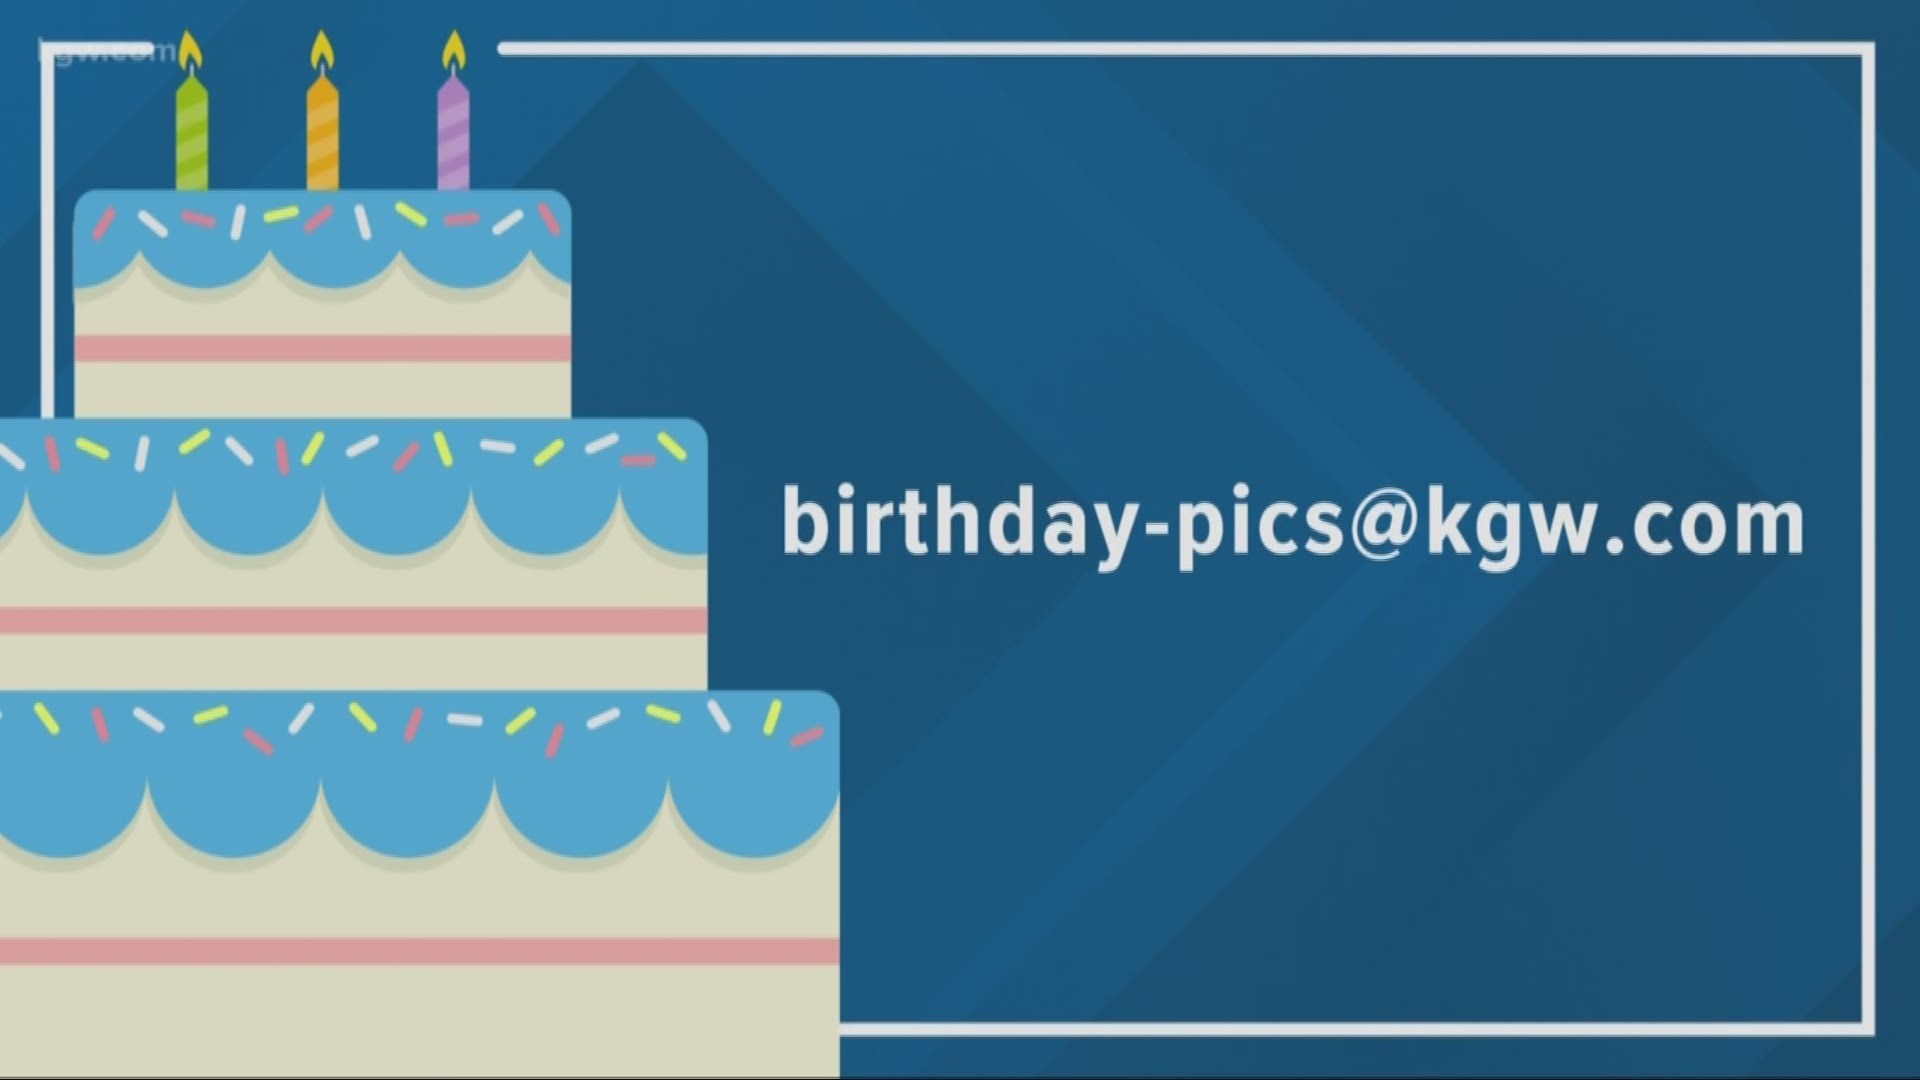 KGW viewer birthdays: 11-21-18